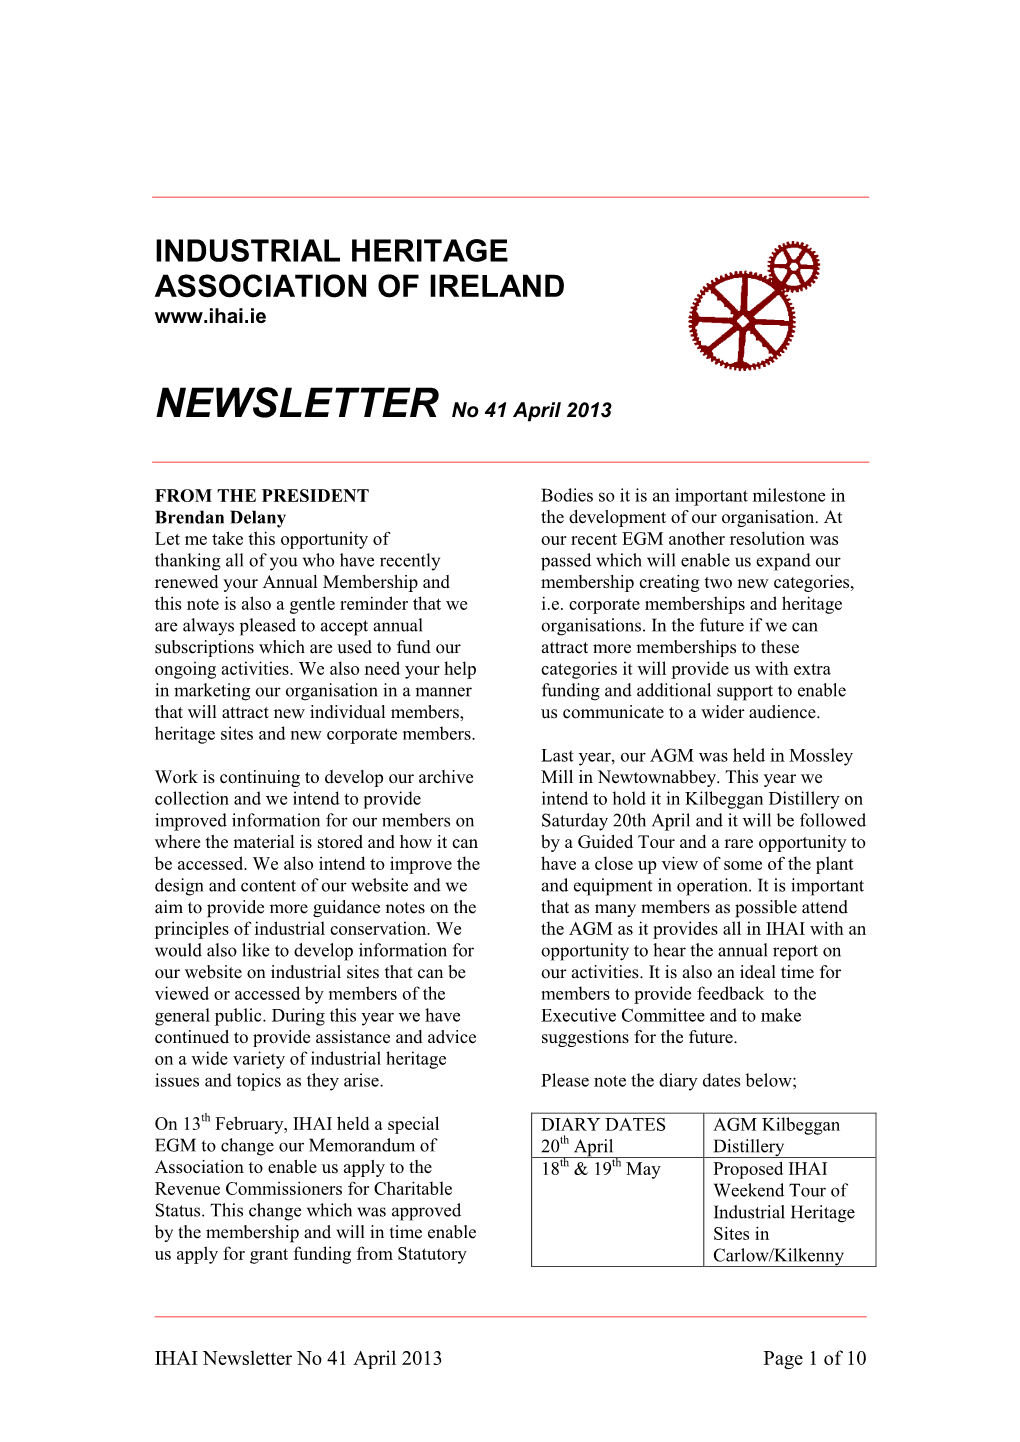 IHAI Newsletter March 2013